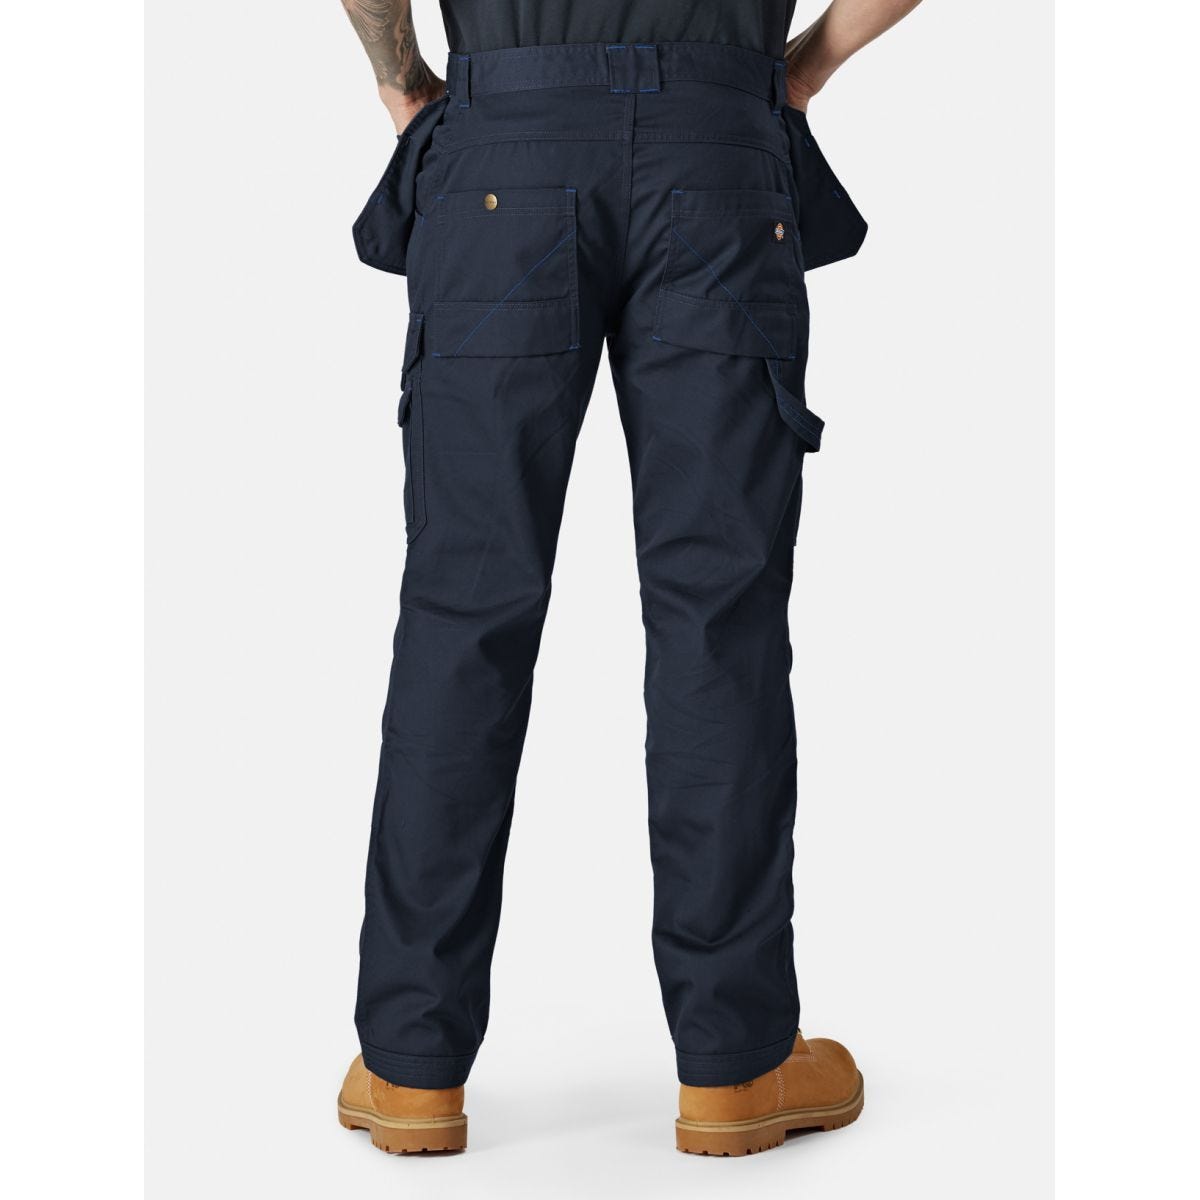 Pantalon Redhawk Pro Bleu marine - Dickies - Taille 38 1